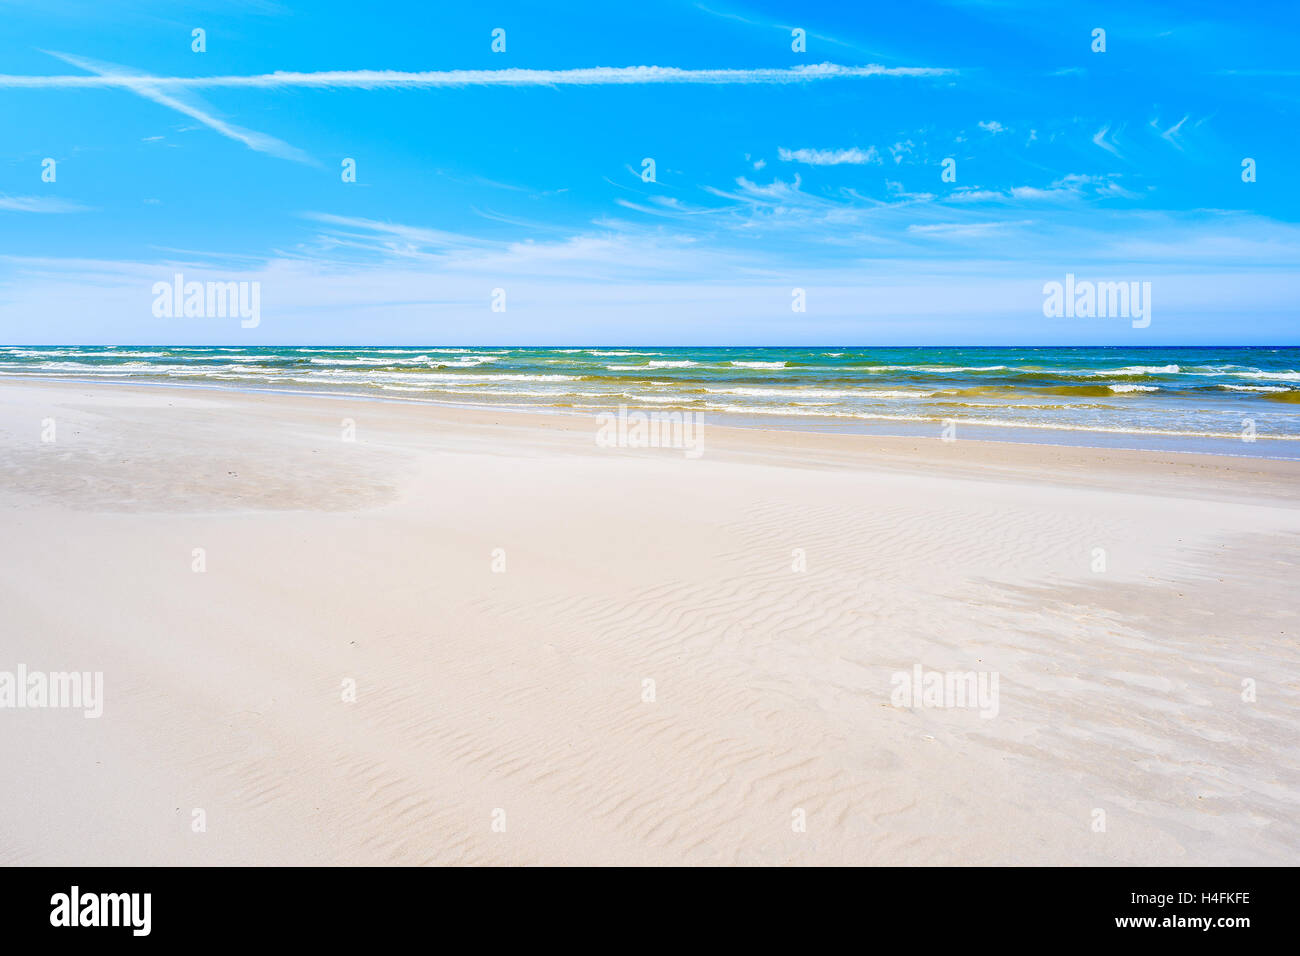 Plage de sable blanc Debki aux beaux jours de l'été, la mer Baltique, Pologne Banque D'Images